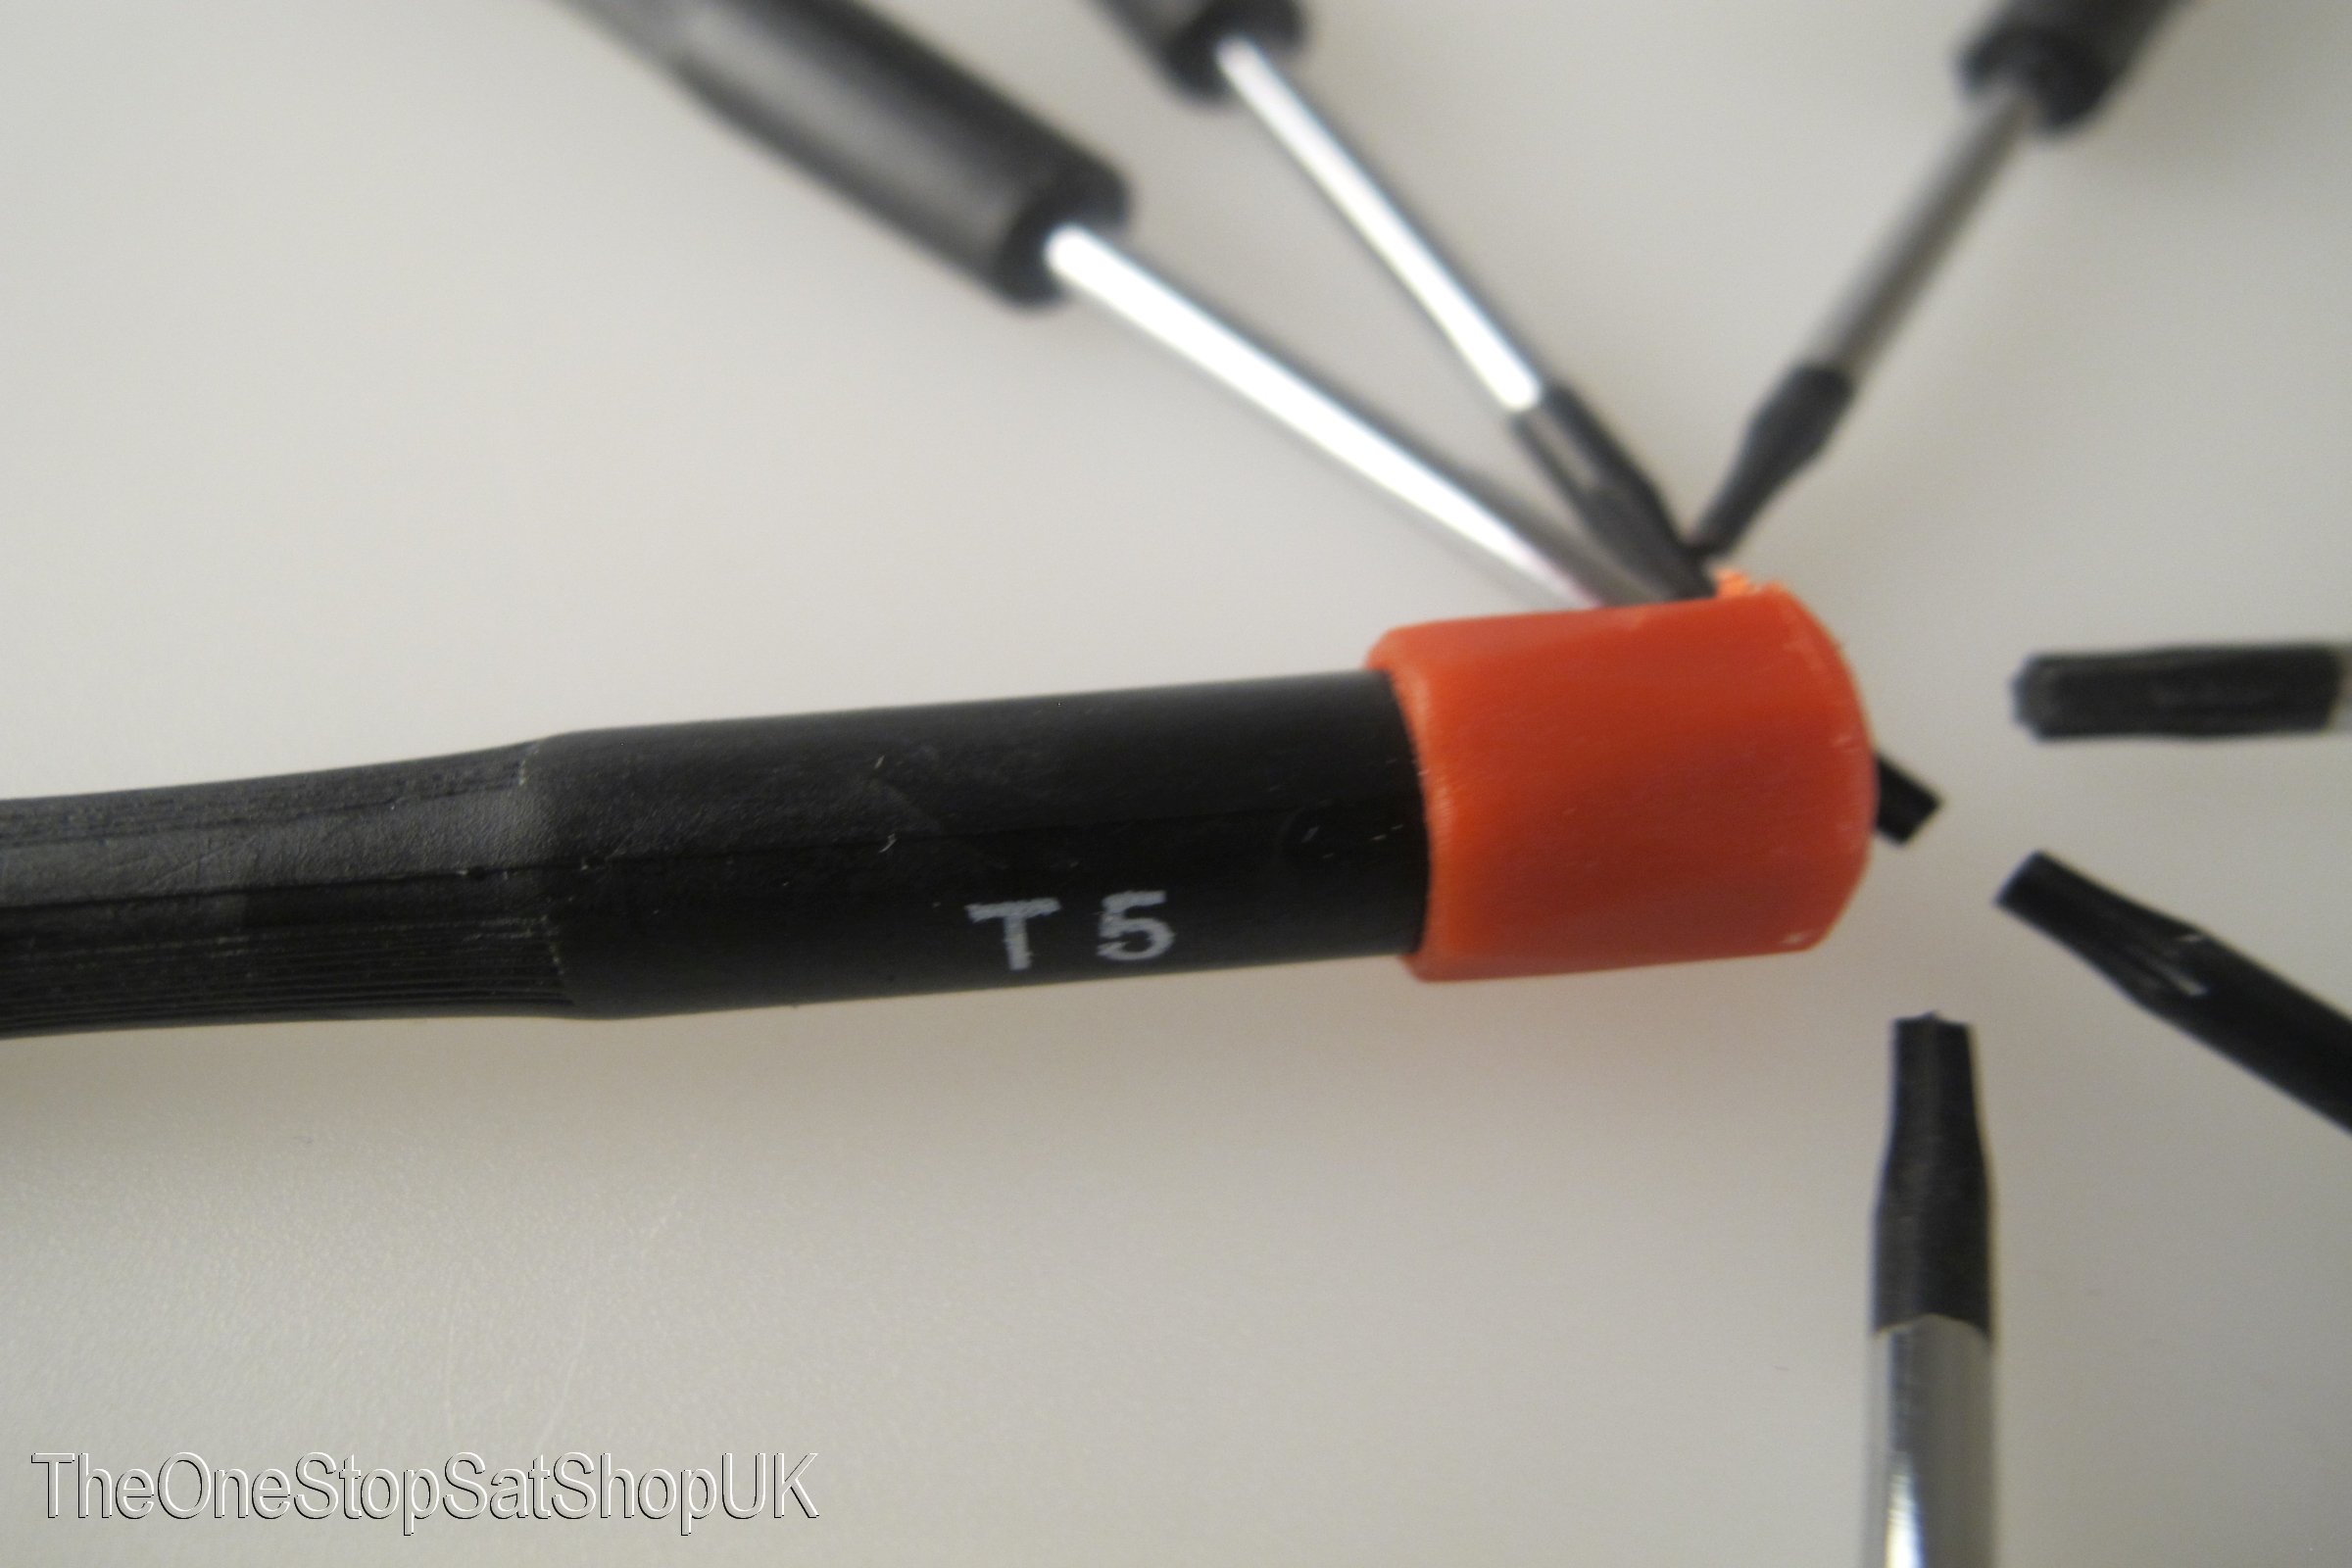 t8 torx screwdriver